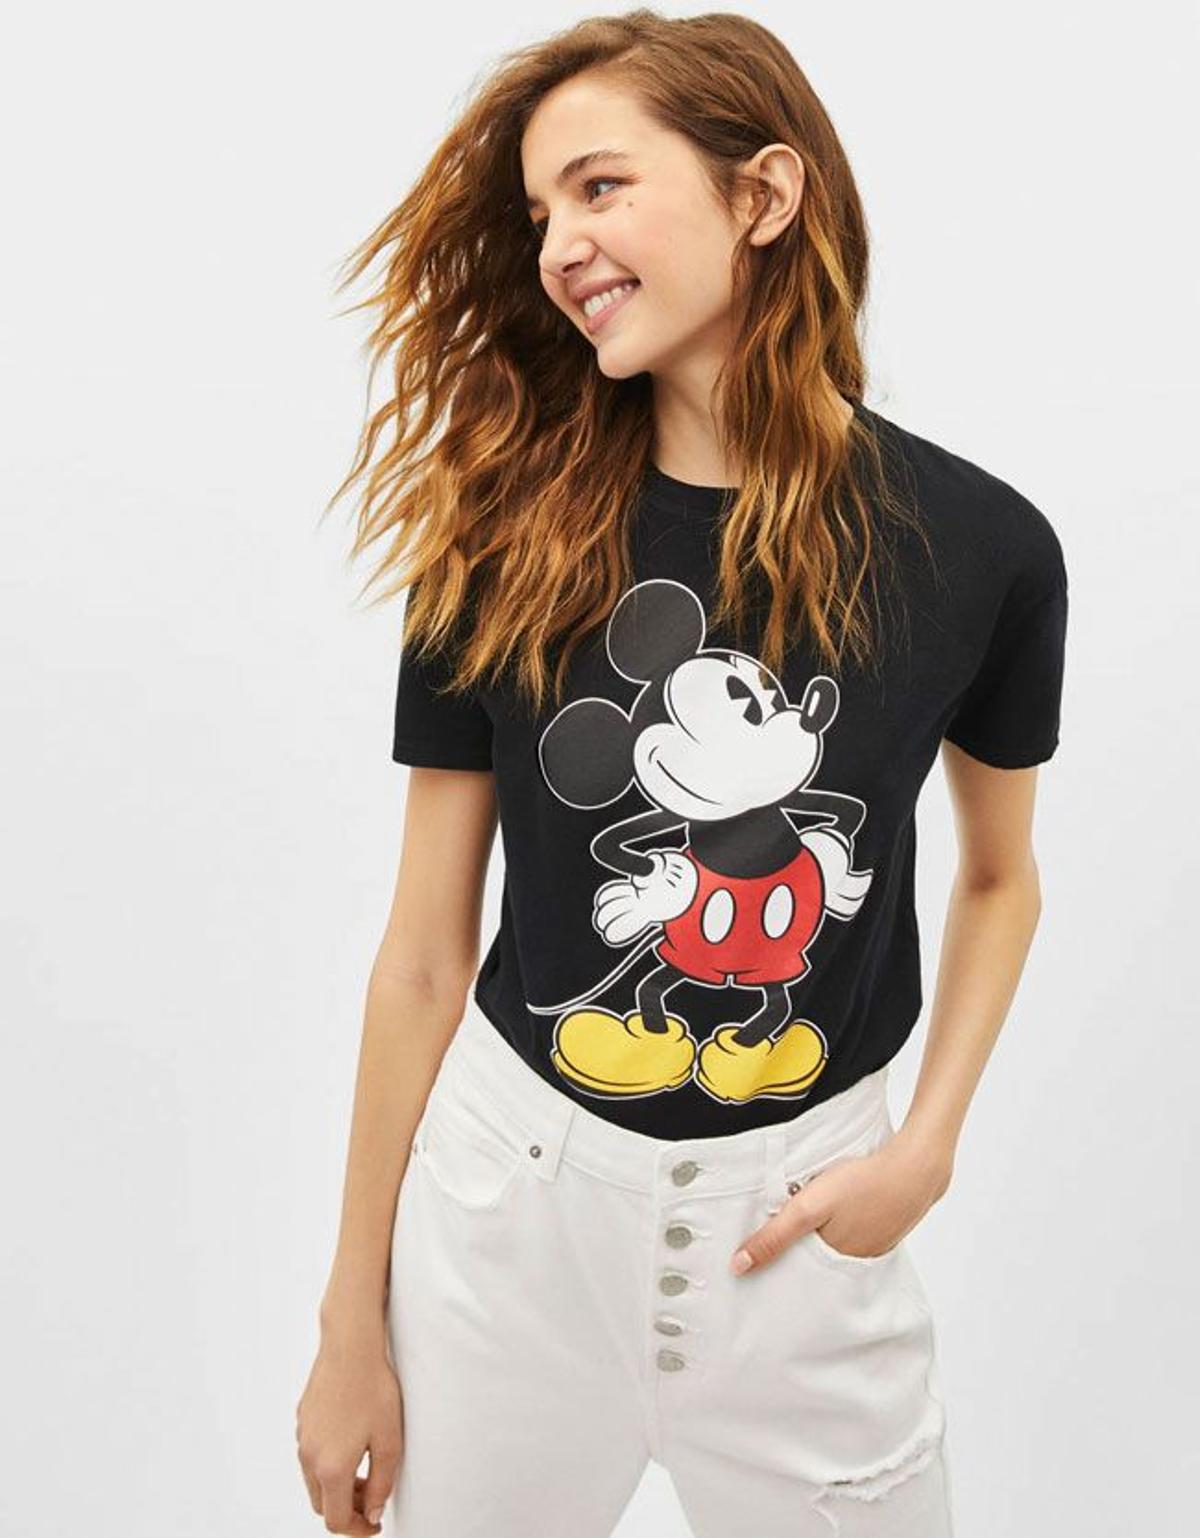 Camiseta de Micky Mouse